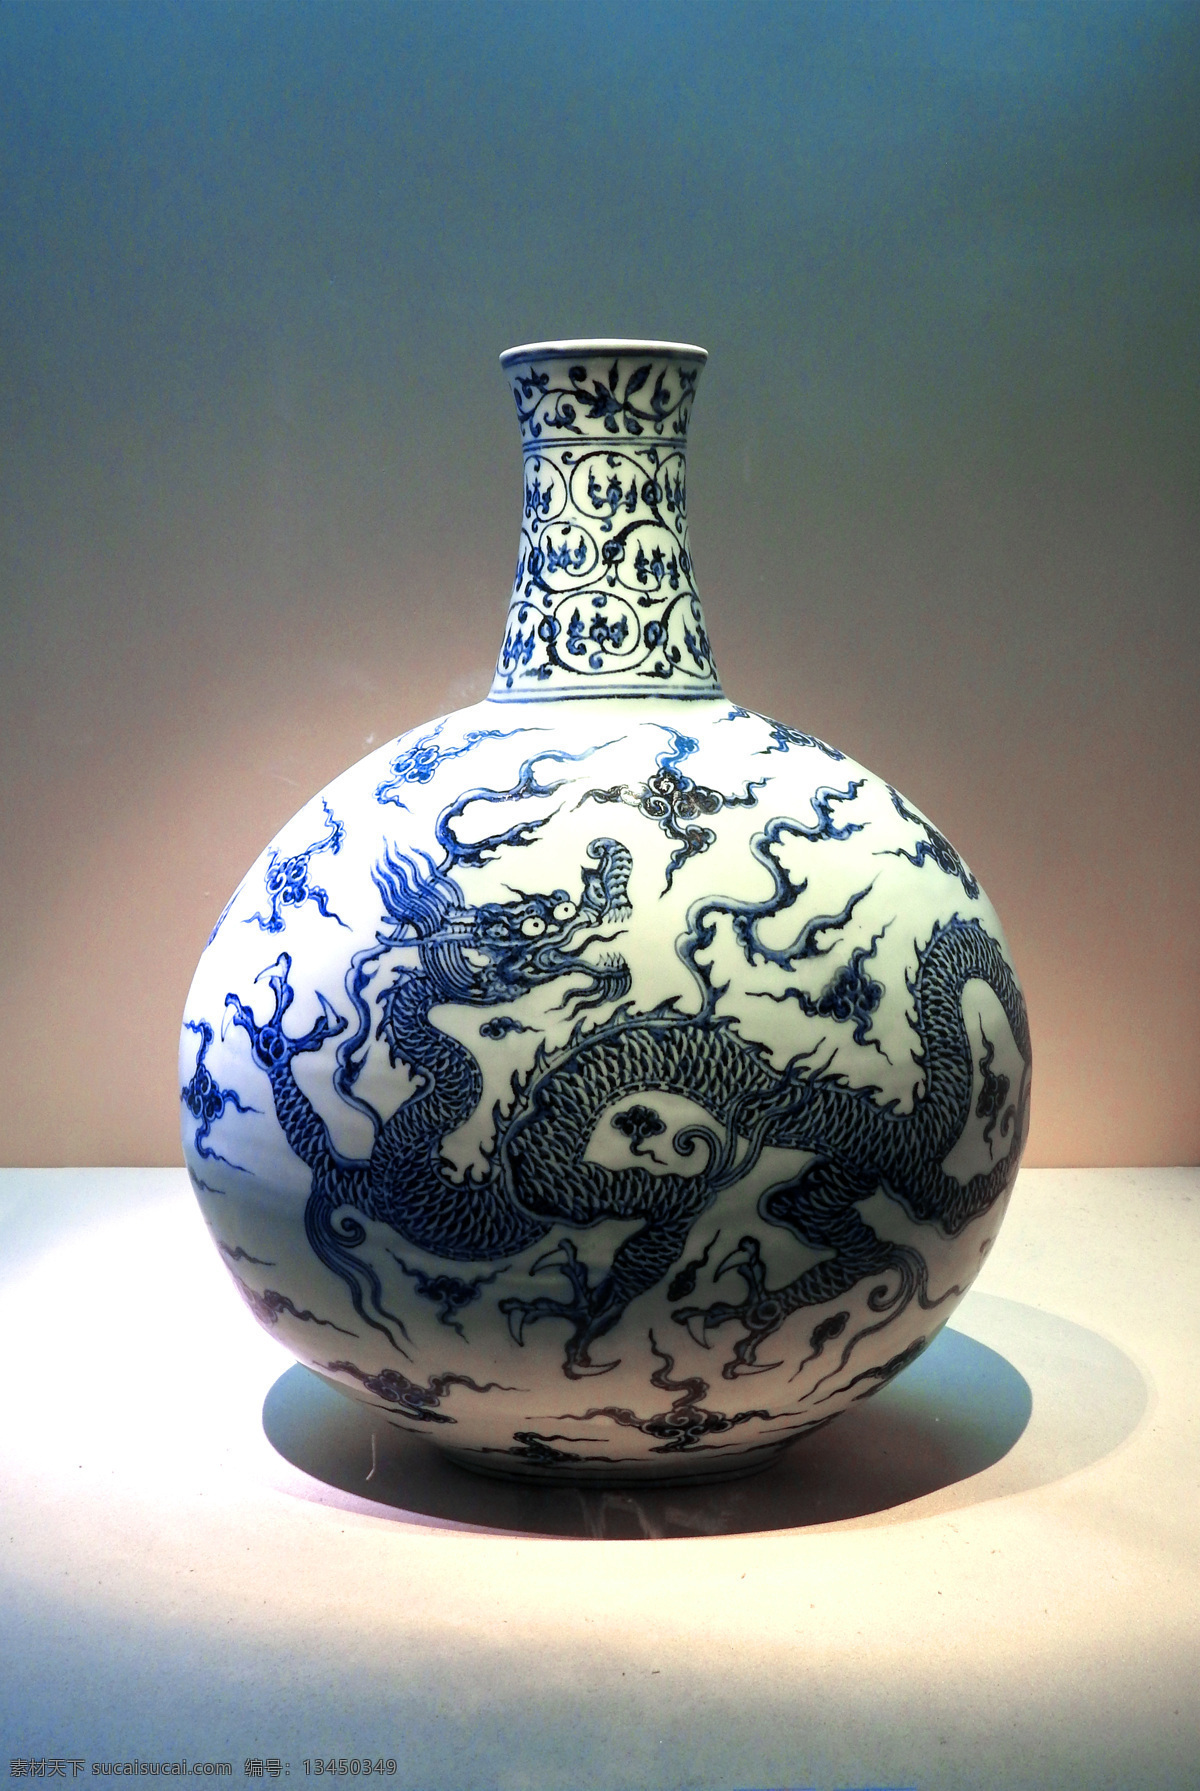 中式 古董 陶瓷 花瓶 工艺品 实物摄影 产品摄影 生活百科 生活素材